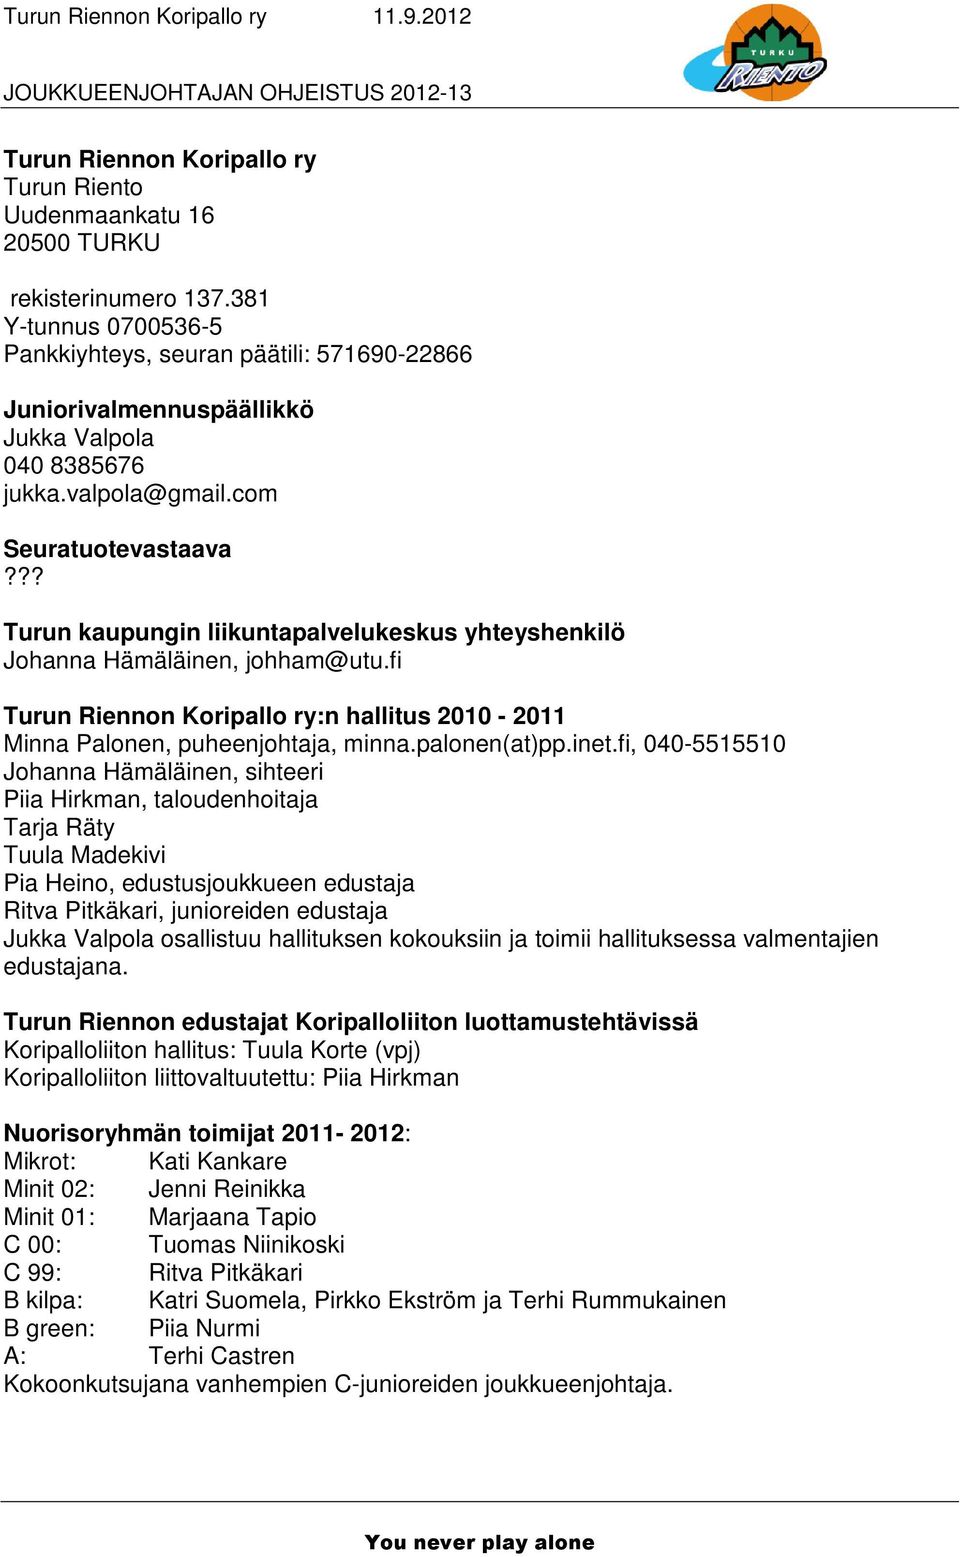 ?? Turun kaupungin liikuntapalvelukeskus yhteyshenkilö Johanna Hämäläinen, johham@utu.fi Turun Riennon Koripallo ry:n hallitus 2010-2011 Minna Palonen, puheenjohtaja, minna.palonen(at)pp.inet.